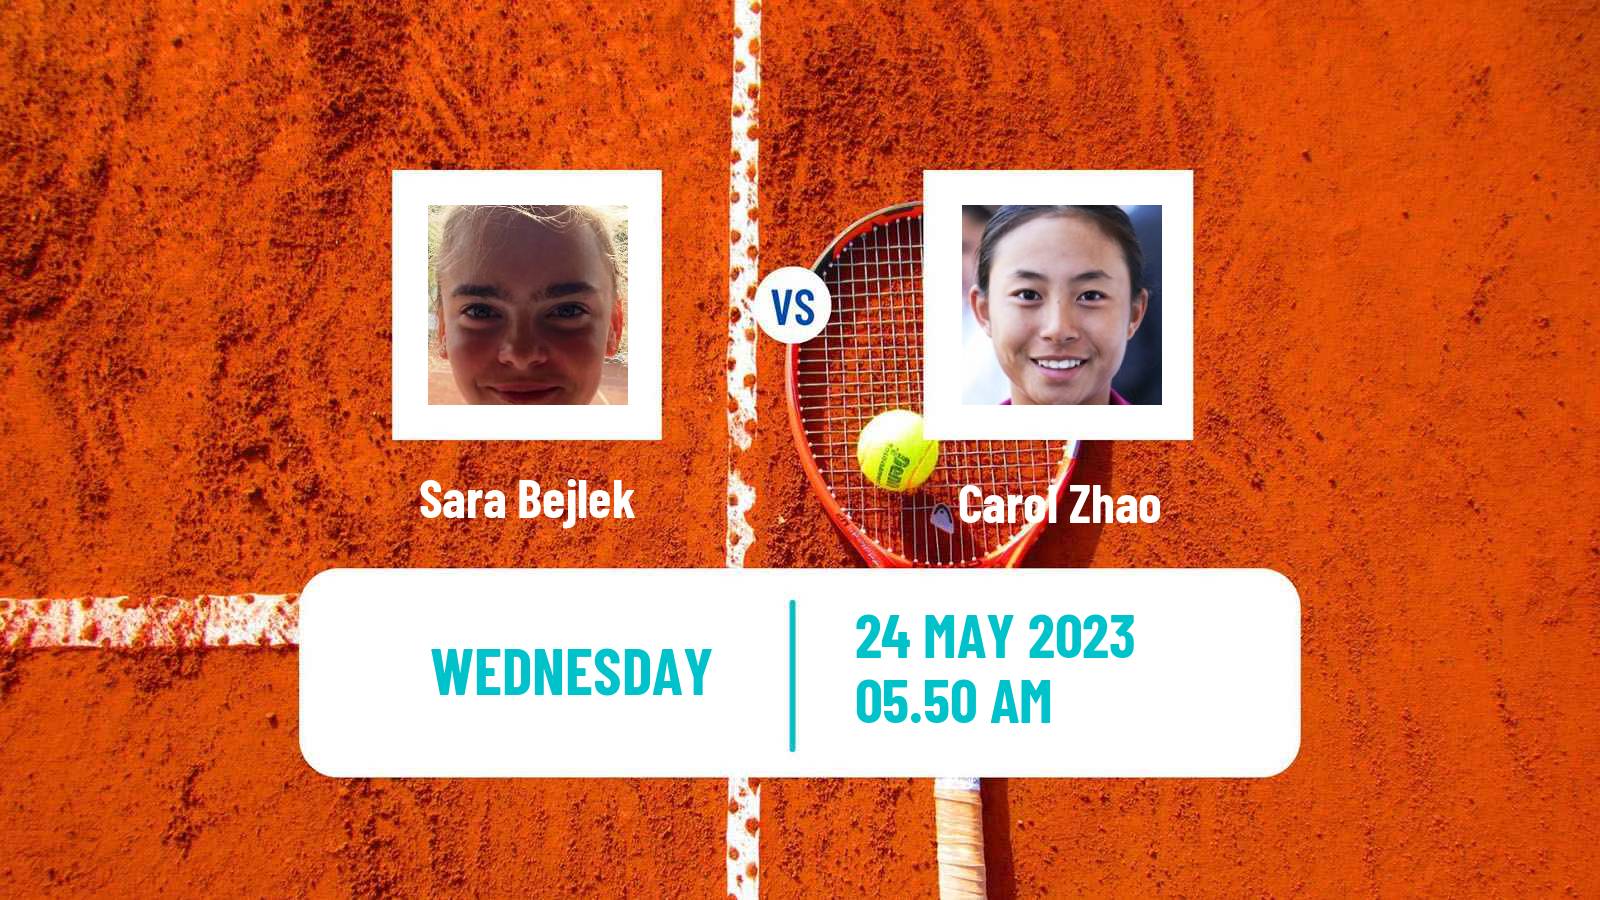 Tennis WTA Roland Garros Sara Bejlek - Carol Zhao